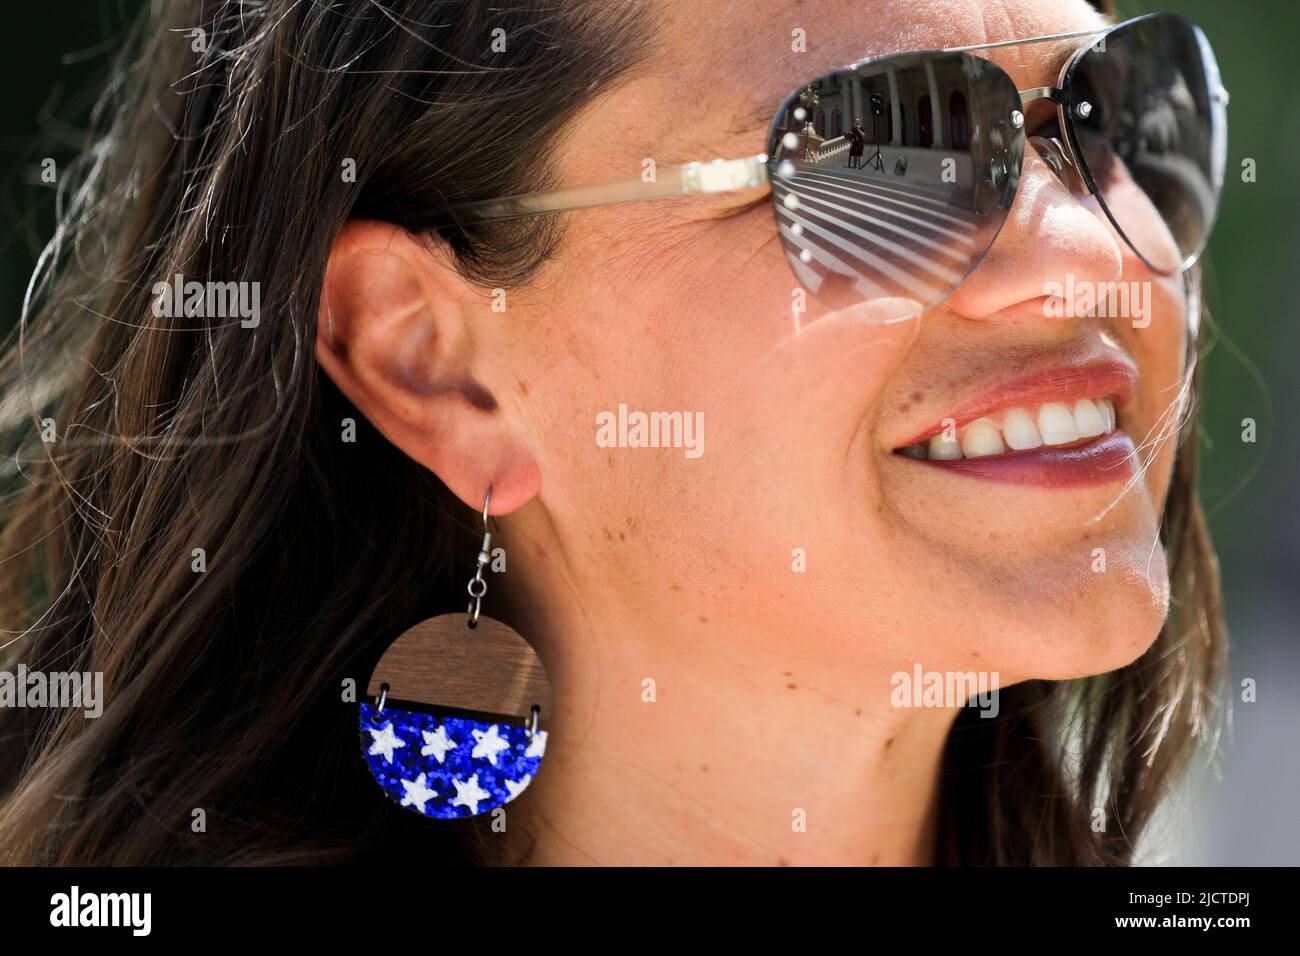 Rachel Atwood, del Condado de Ottawa, sonríe como hablante y se refleja en sus gafas de sol durante un evento de Marcha por la Libertad Médica organizado por Informed Choice Michigan en Lansing, Michigan, EE.UU., 15 de junio de 2022. REUTERS/Emily Elconin Foto de stock